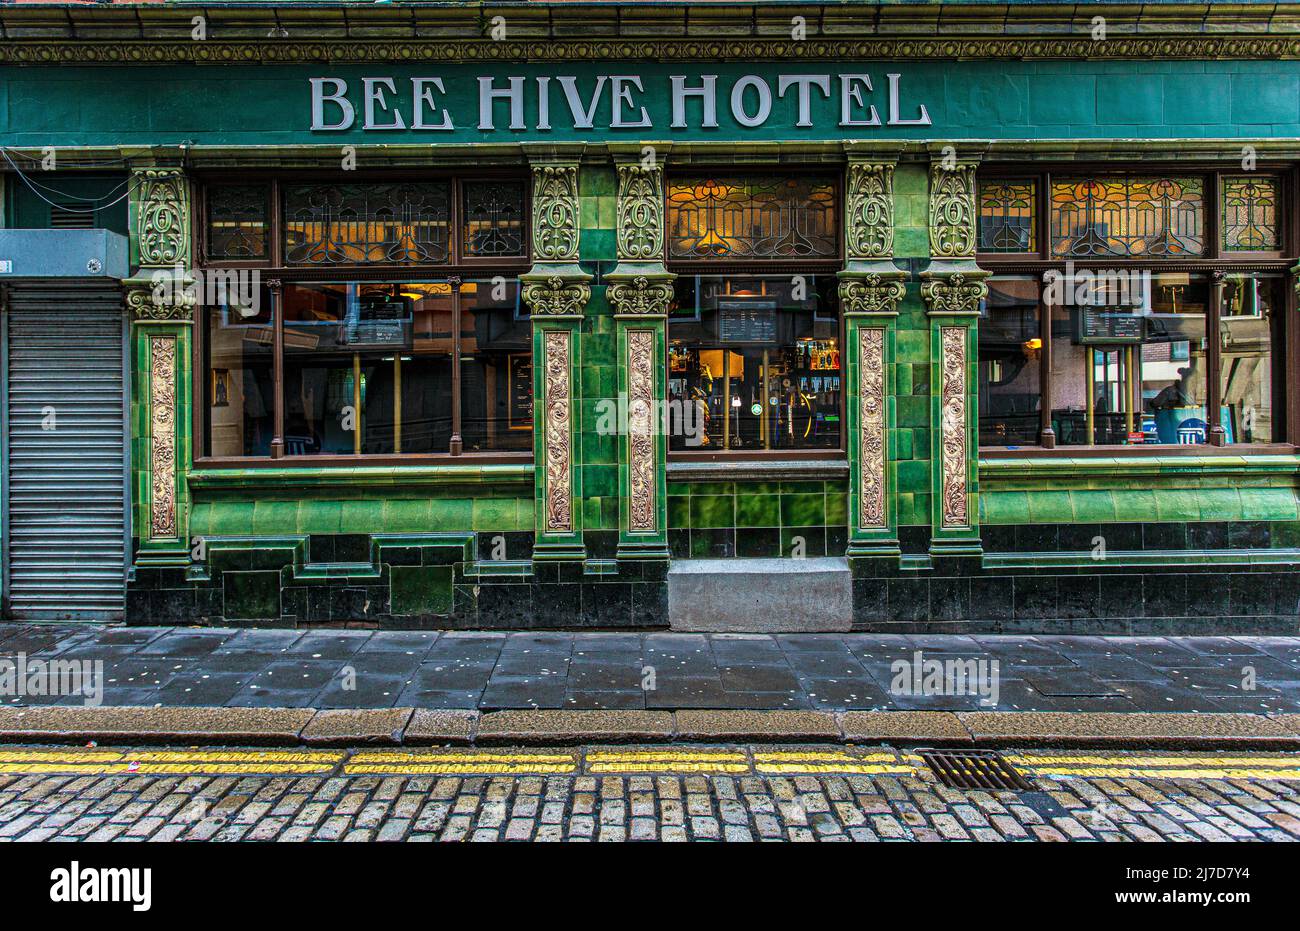 L'extérieur de la maison publique de l'hôtel Beehive fait face à des carreaux vitrés verts et jaunes. High Bridge , Newcastle upon Tyne, Angleterre. Banque D'Images